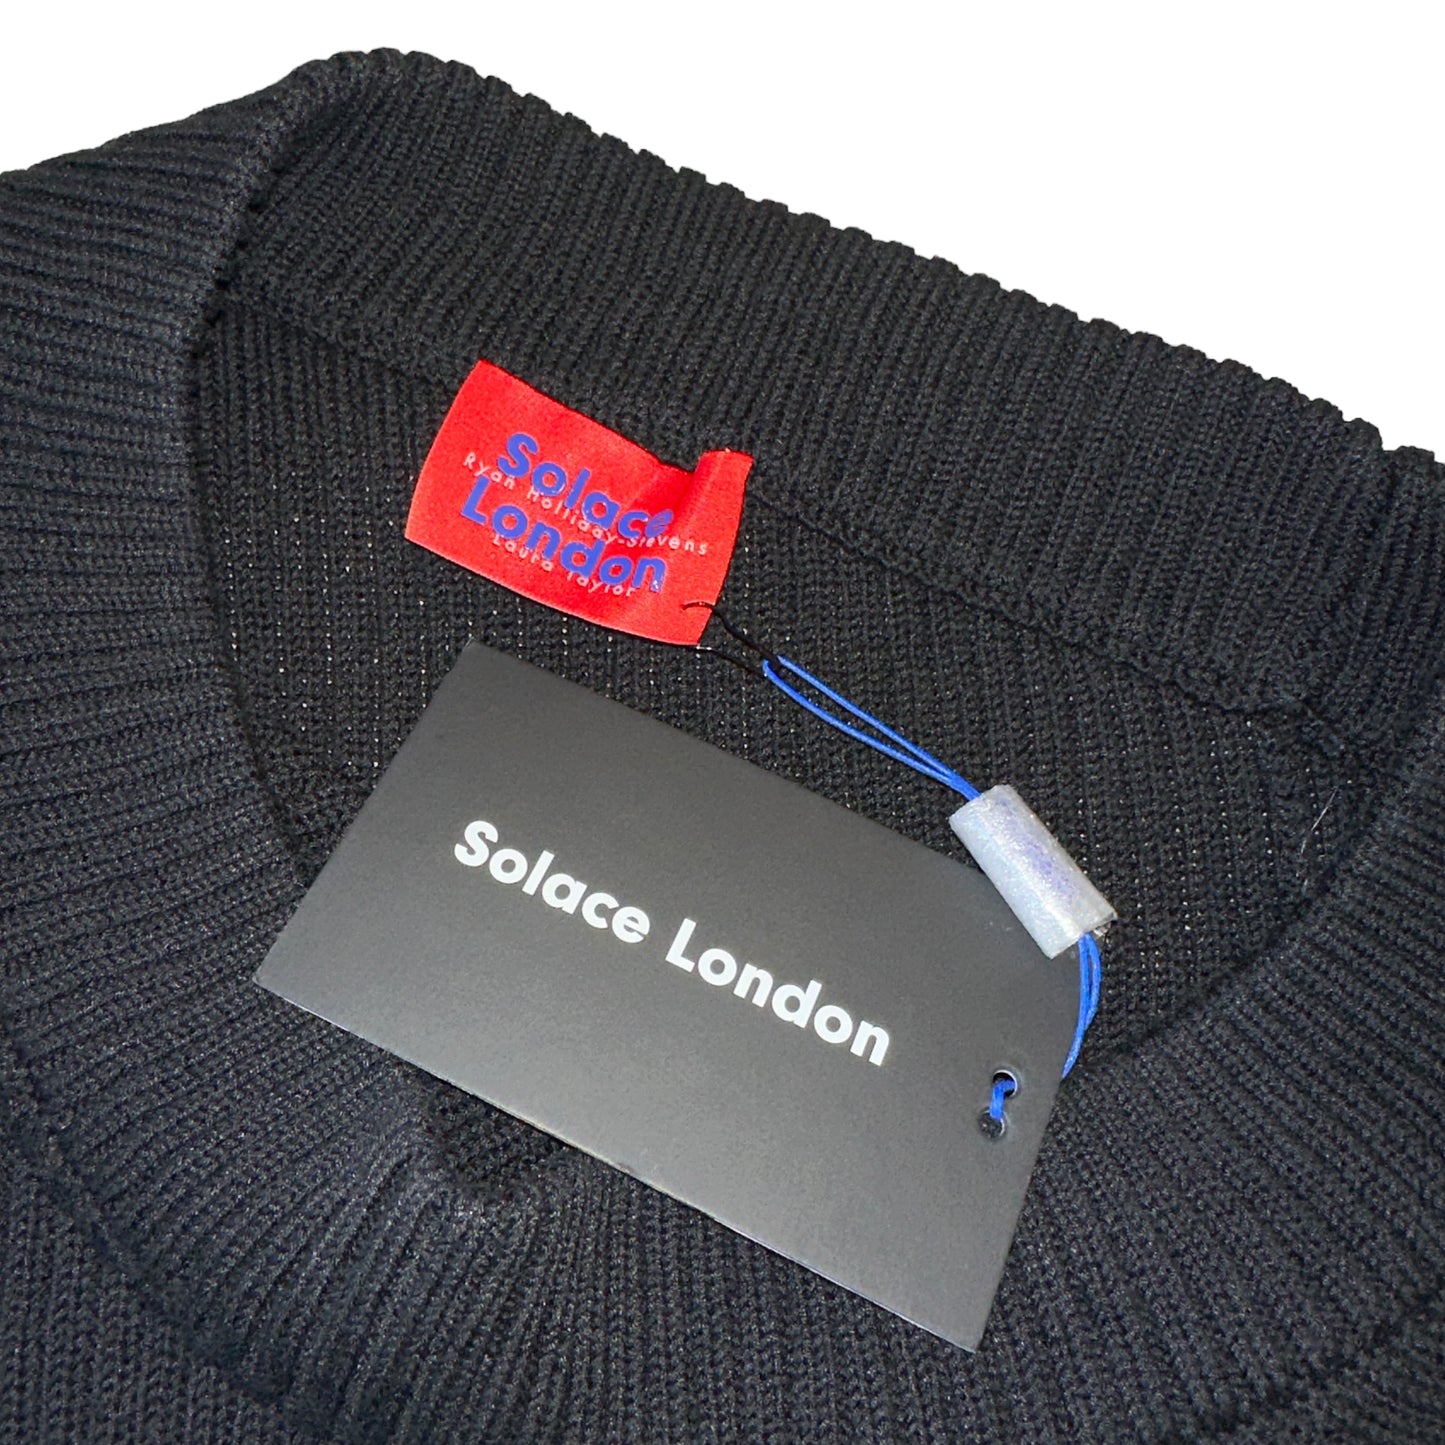 Black One-Shoulder Sweater - M